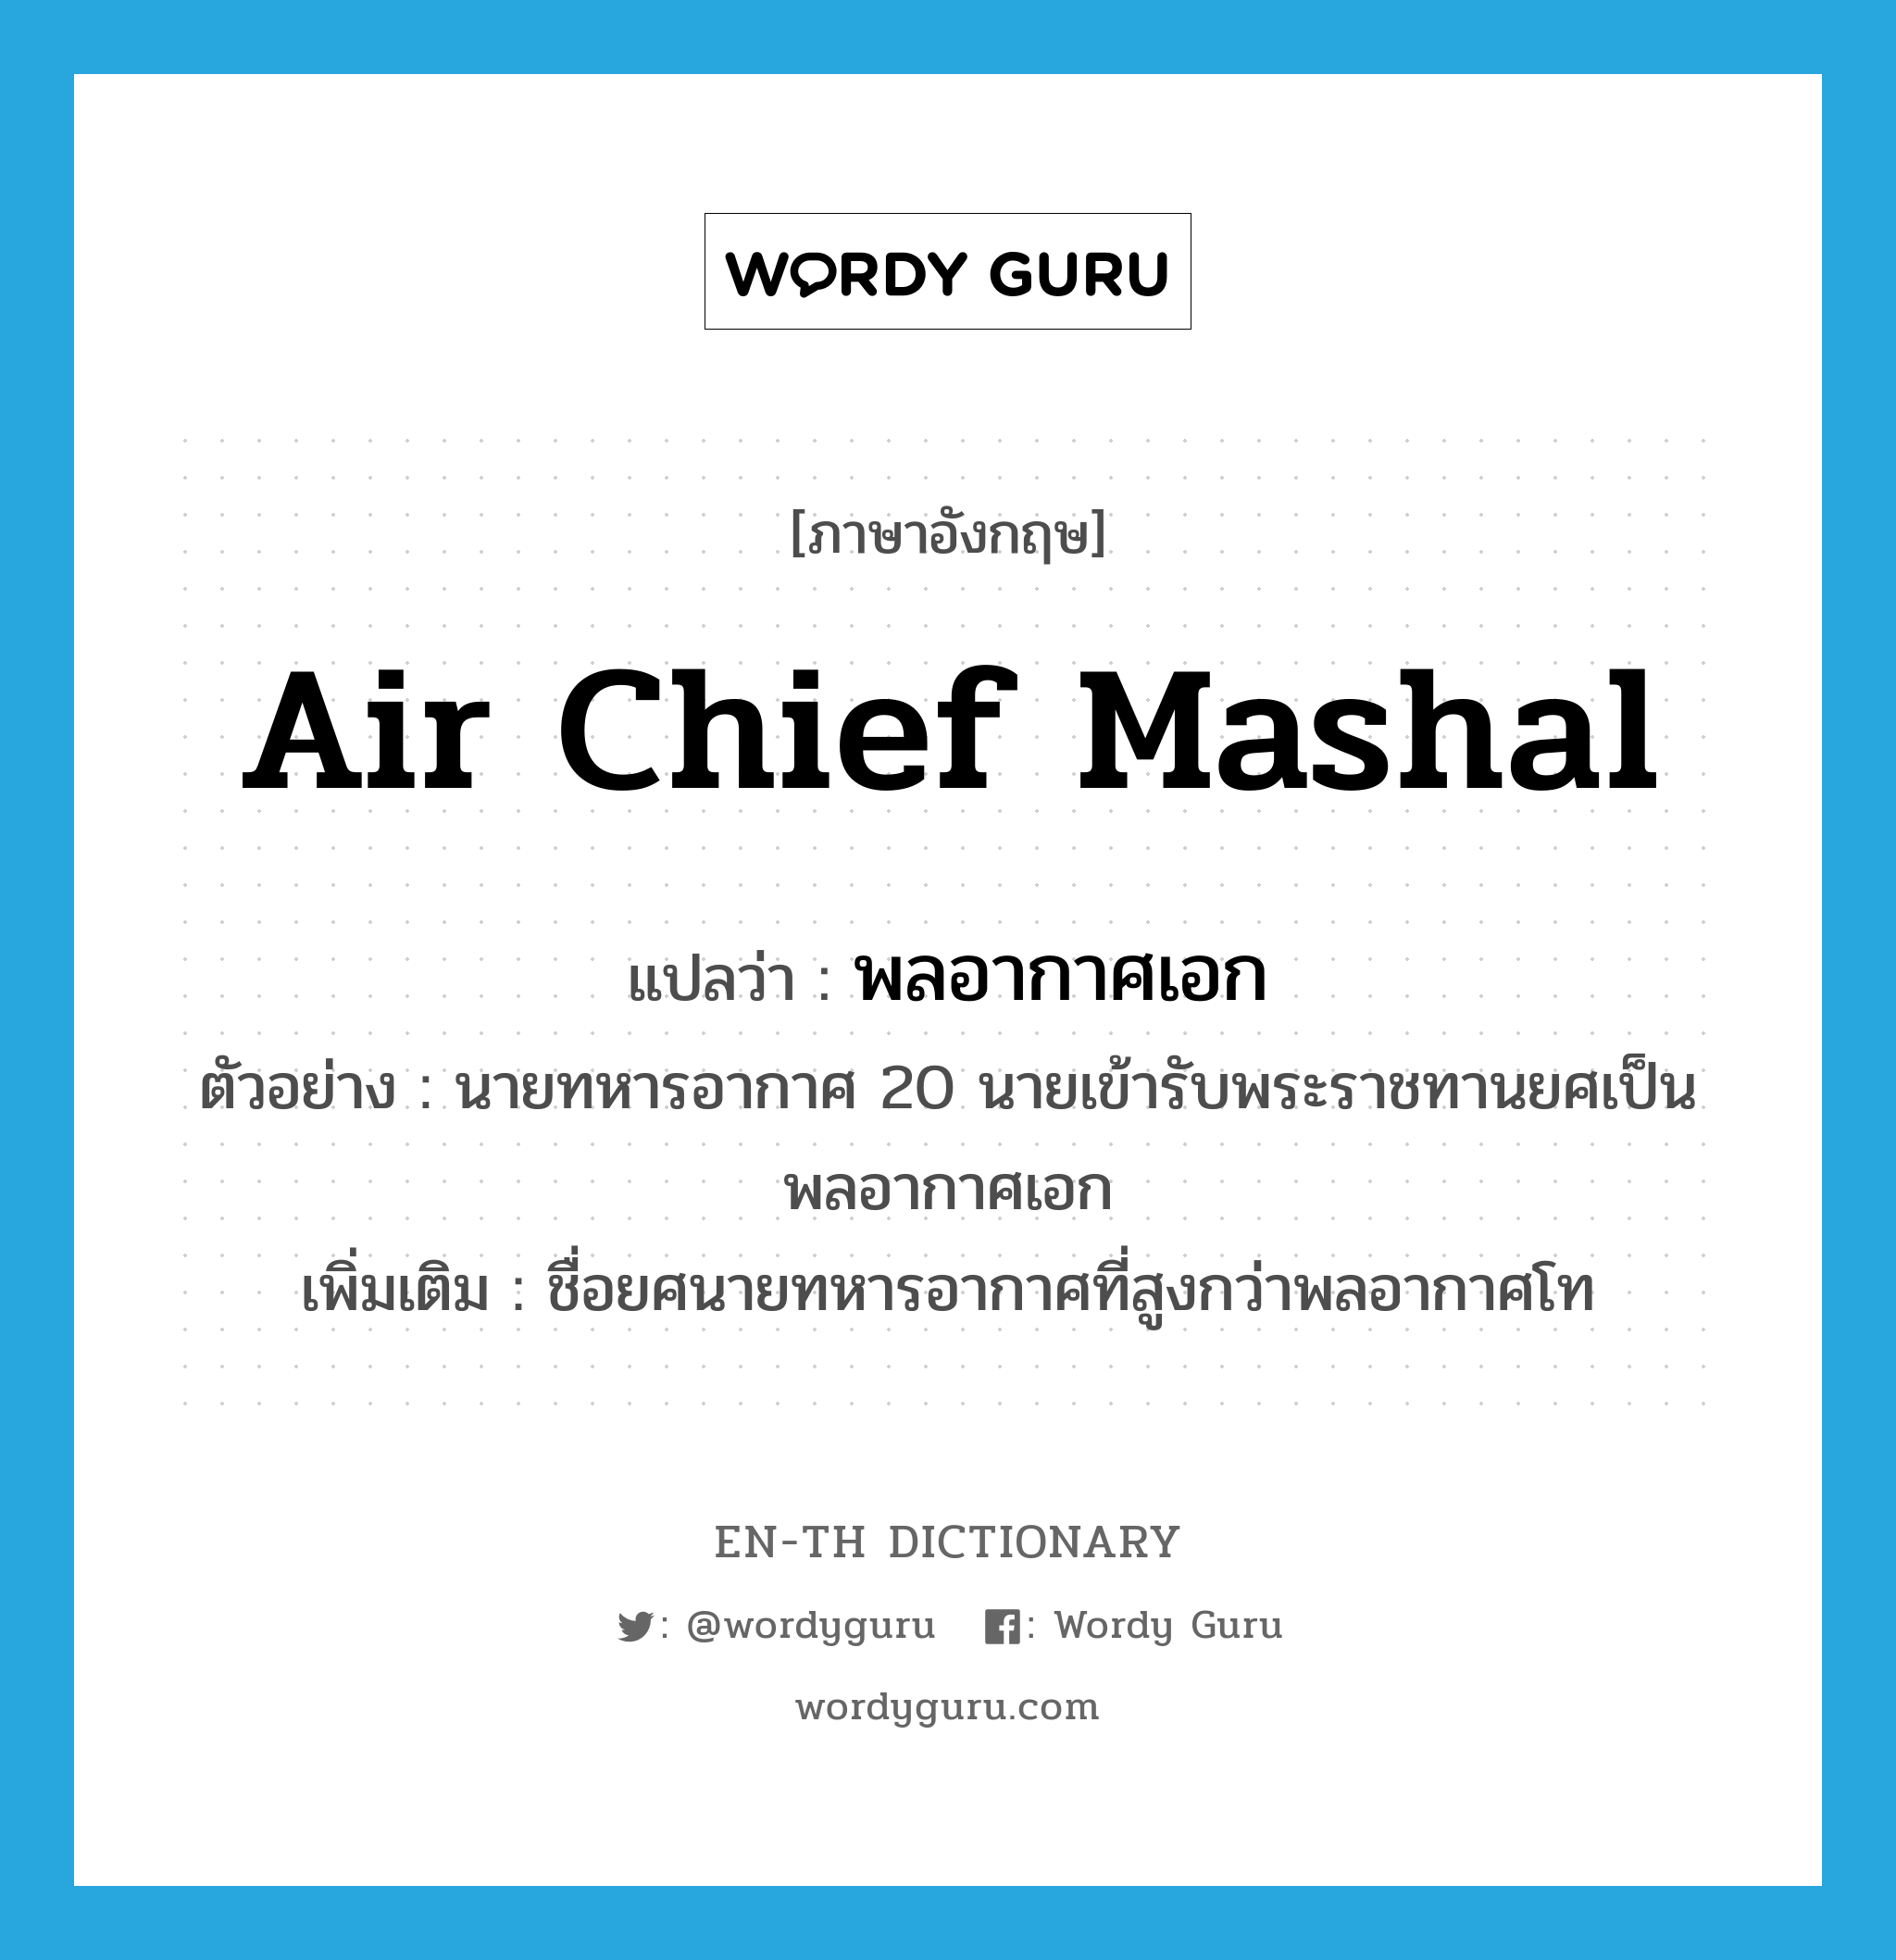 Air Chief Mashal แปลว่า?, คำศัพท์ภาษาอังกฤษ Air Chief Mashal แปลว่า พลอากาศเอก ประเภท N ตัวอย่าง นายทหารอากาศ 20 นายเข้ารับพระราชทานยศเป็นพลอากาศเอก เพิ่มเติม ชื่อยศนายทหารอากาศที่สูงกว่าพลอากาศโท หมวด N